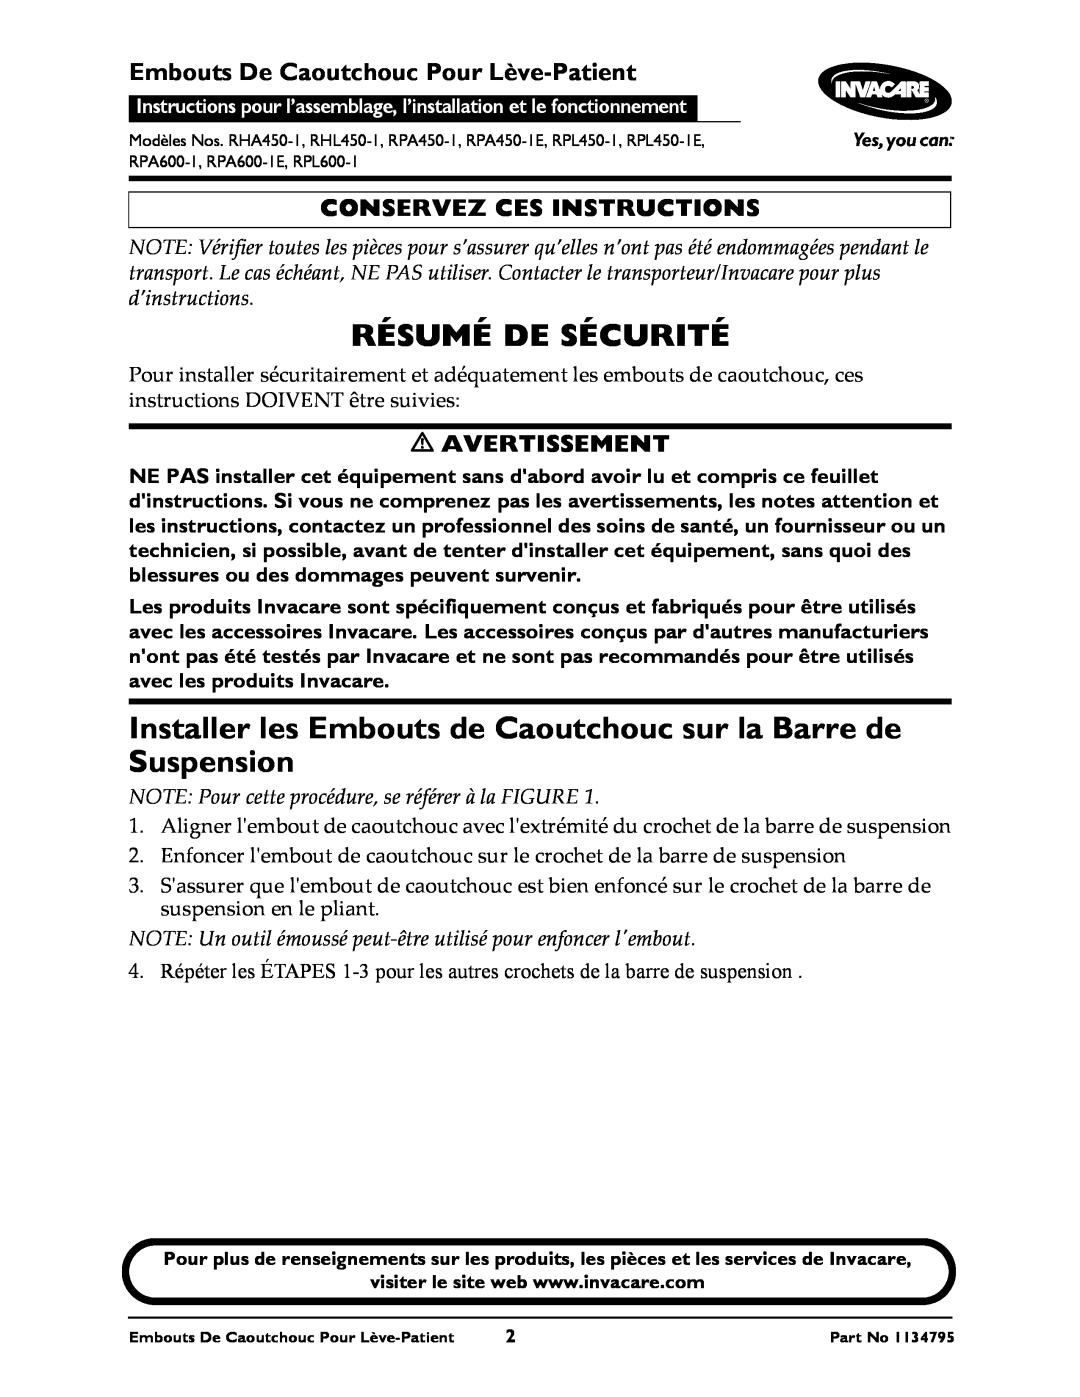 Invacare RHA450-1 Résumé De Sécurité, Installer les Embouts de Caoutchouc sur la Barre de Suspension, Avertissement 